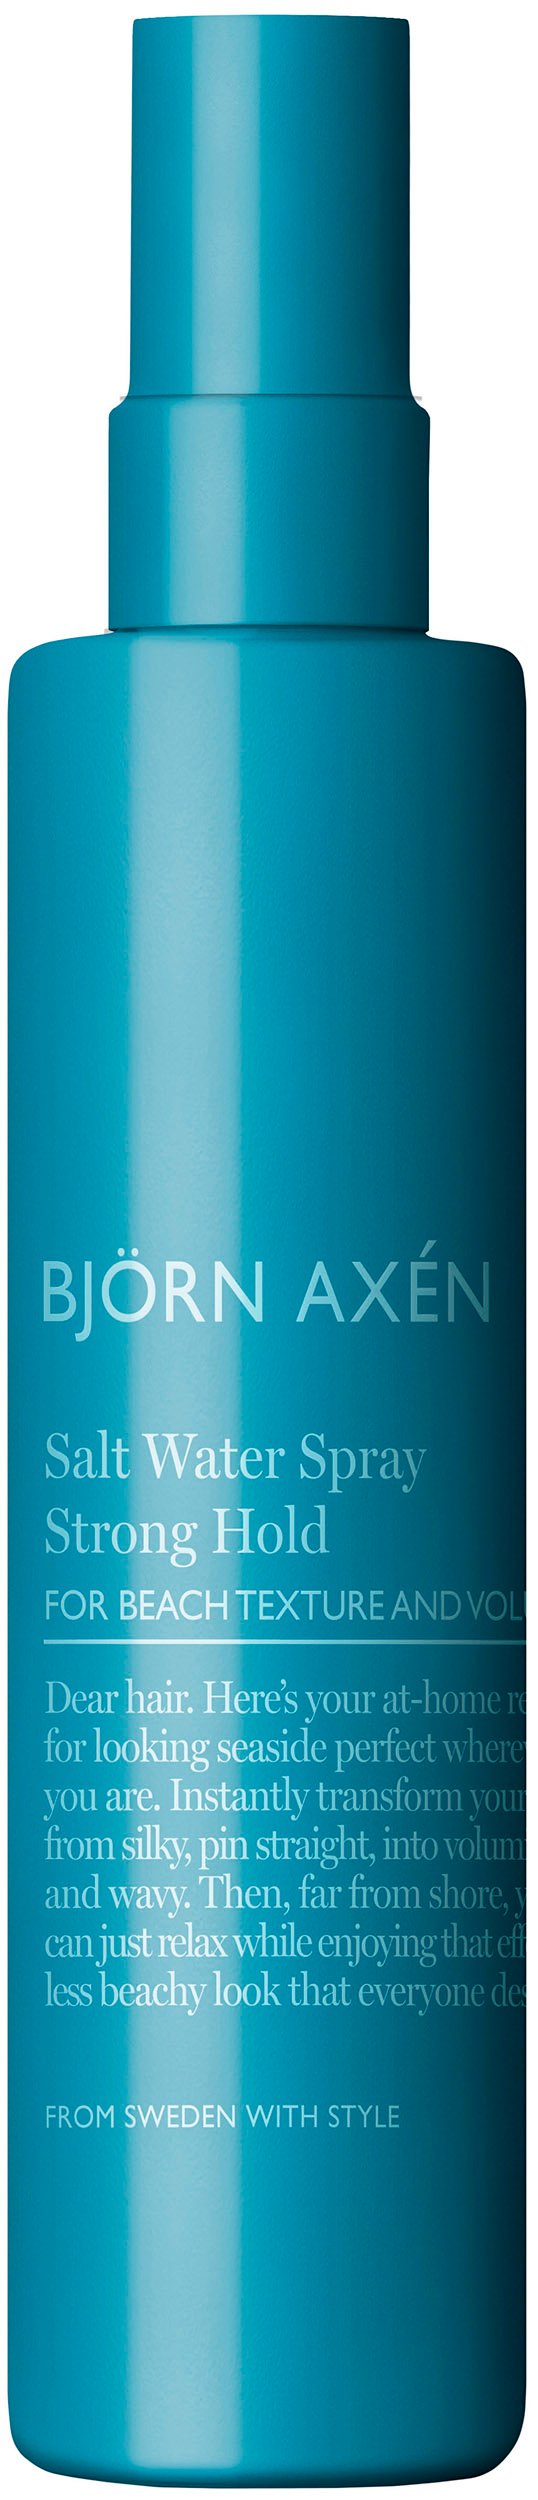 Björn Axén Salt water spray 150 ml